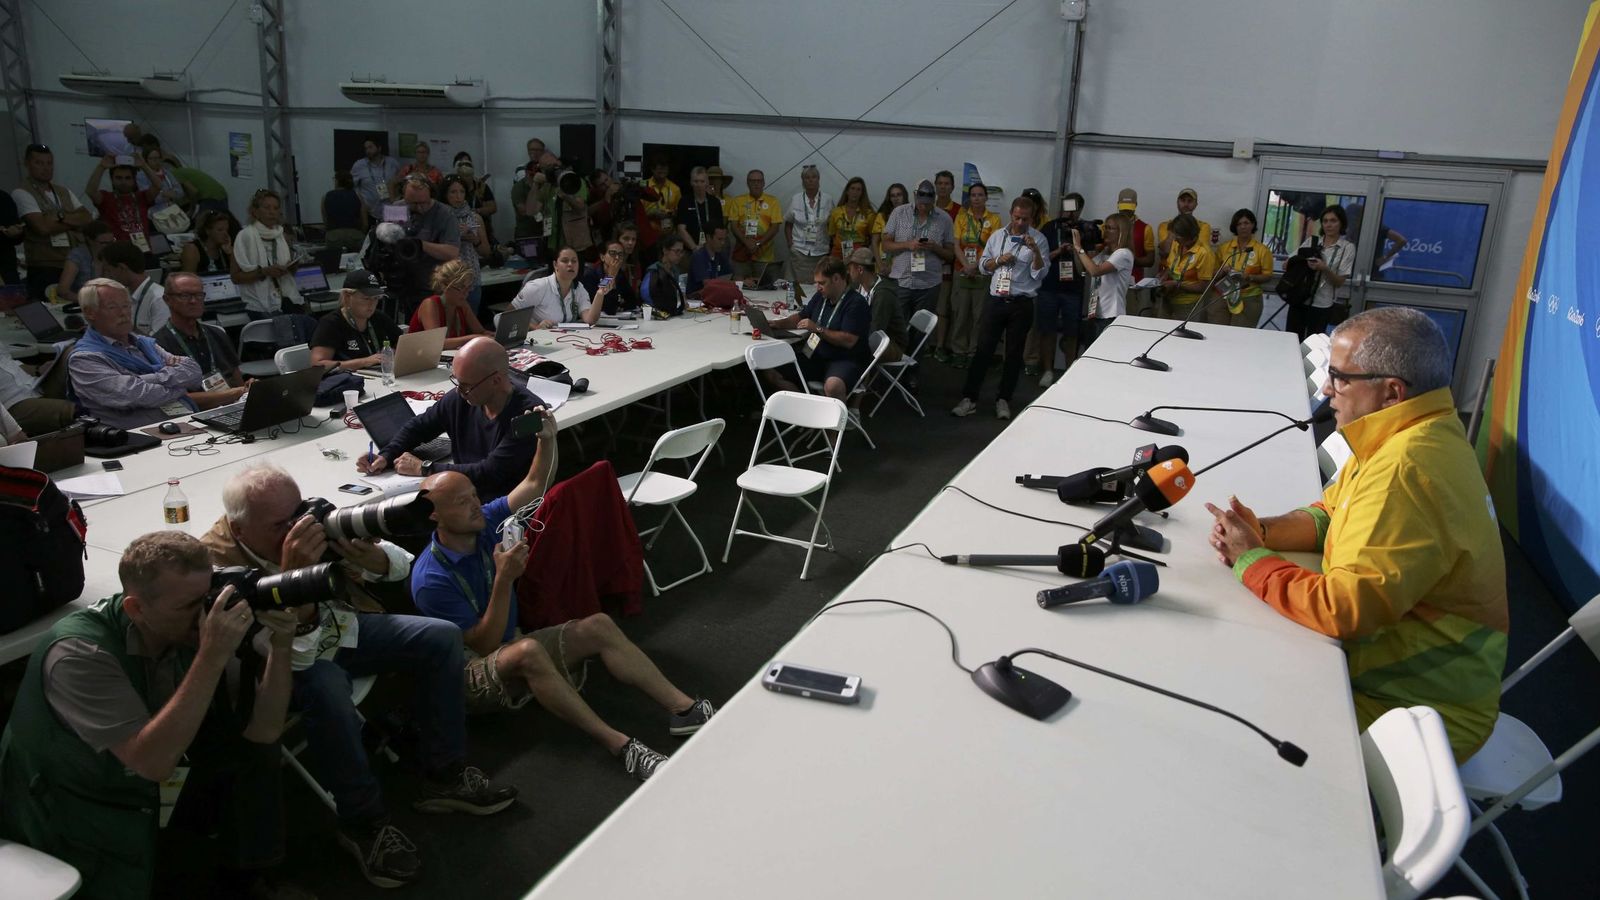 Foto: El director ejecutivo de comunicaciones de Río da explicaciones sobre el disparo (Tony Gentile/REUTERS)